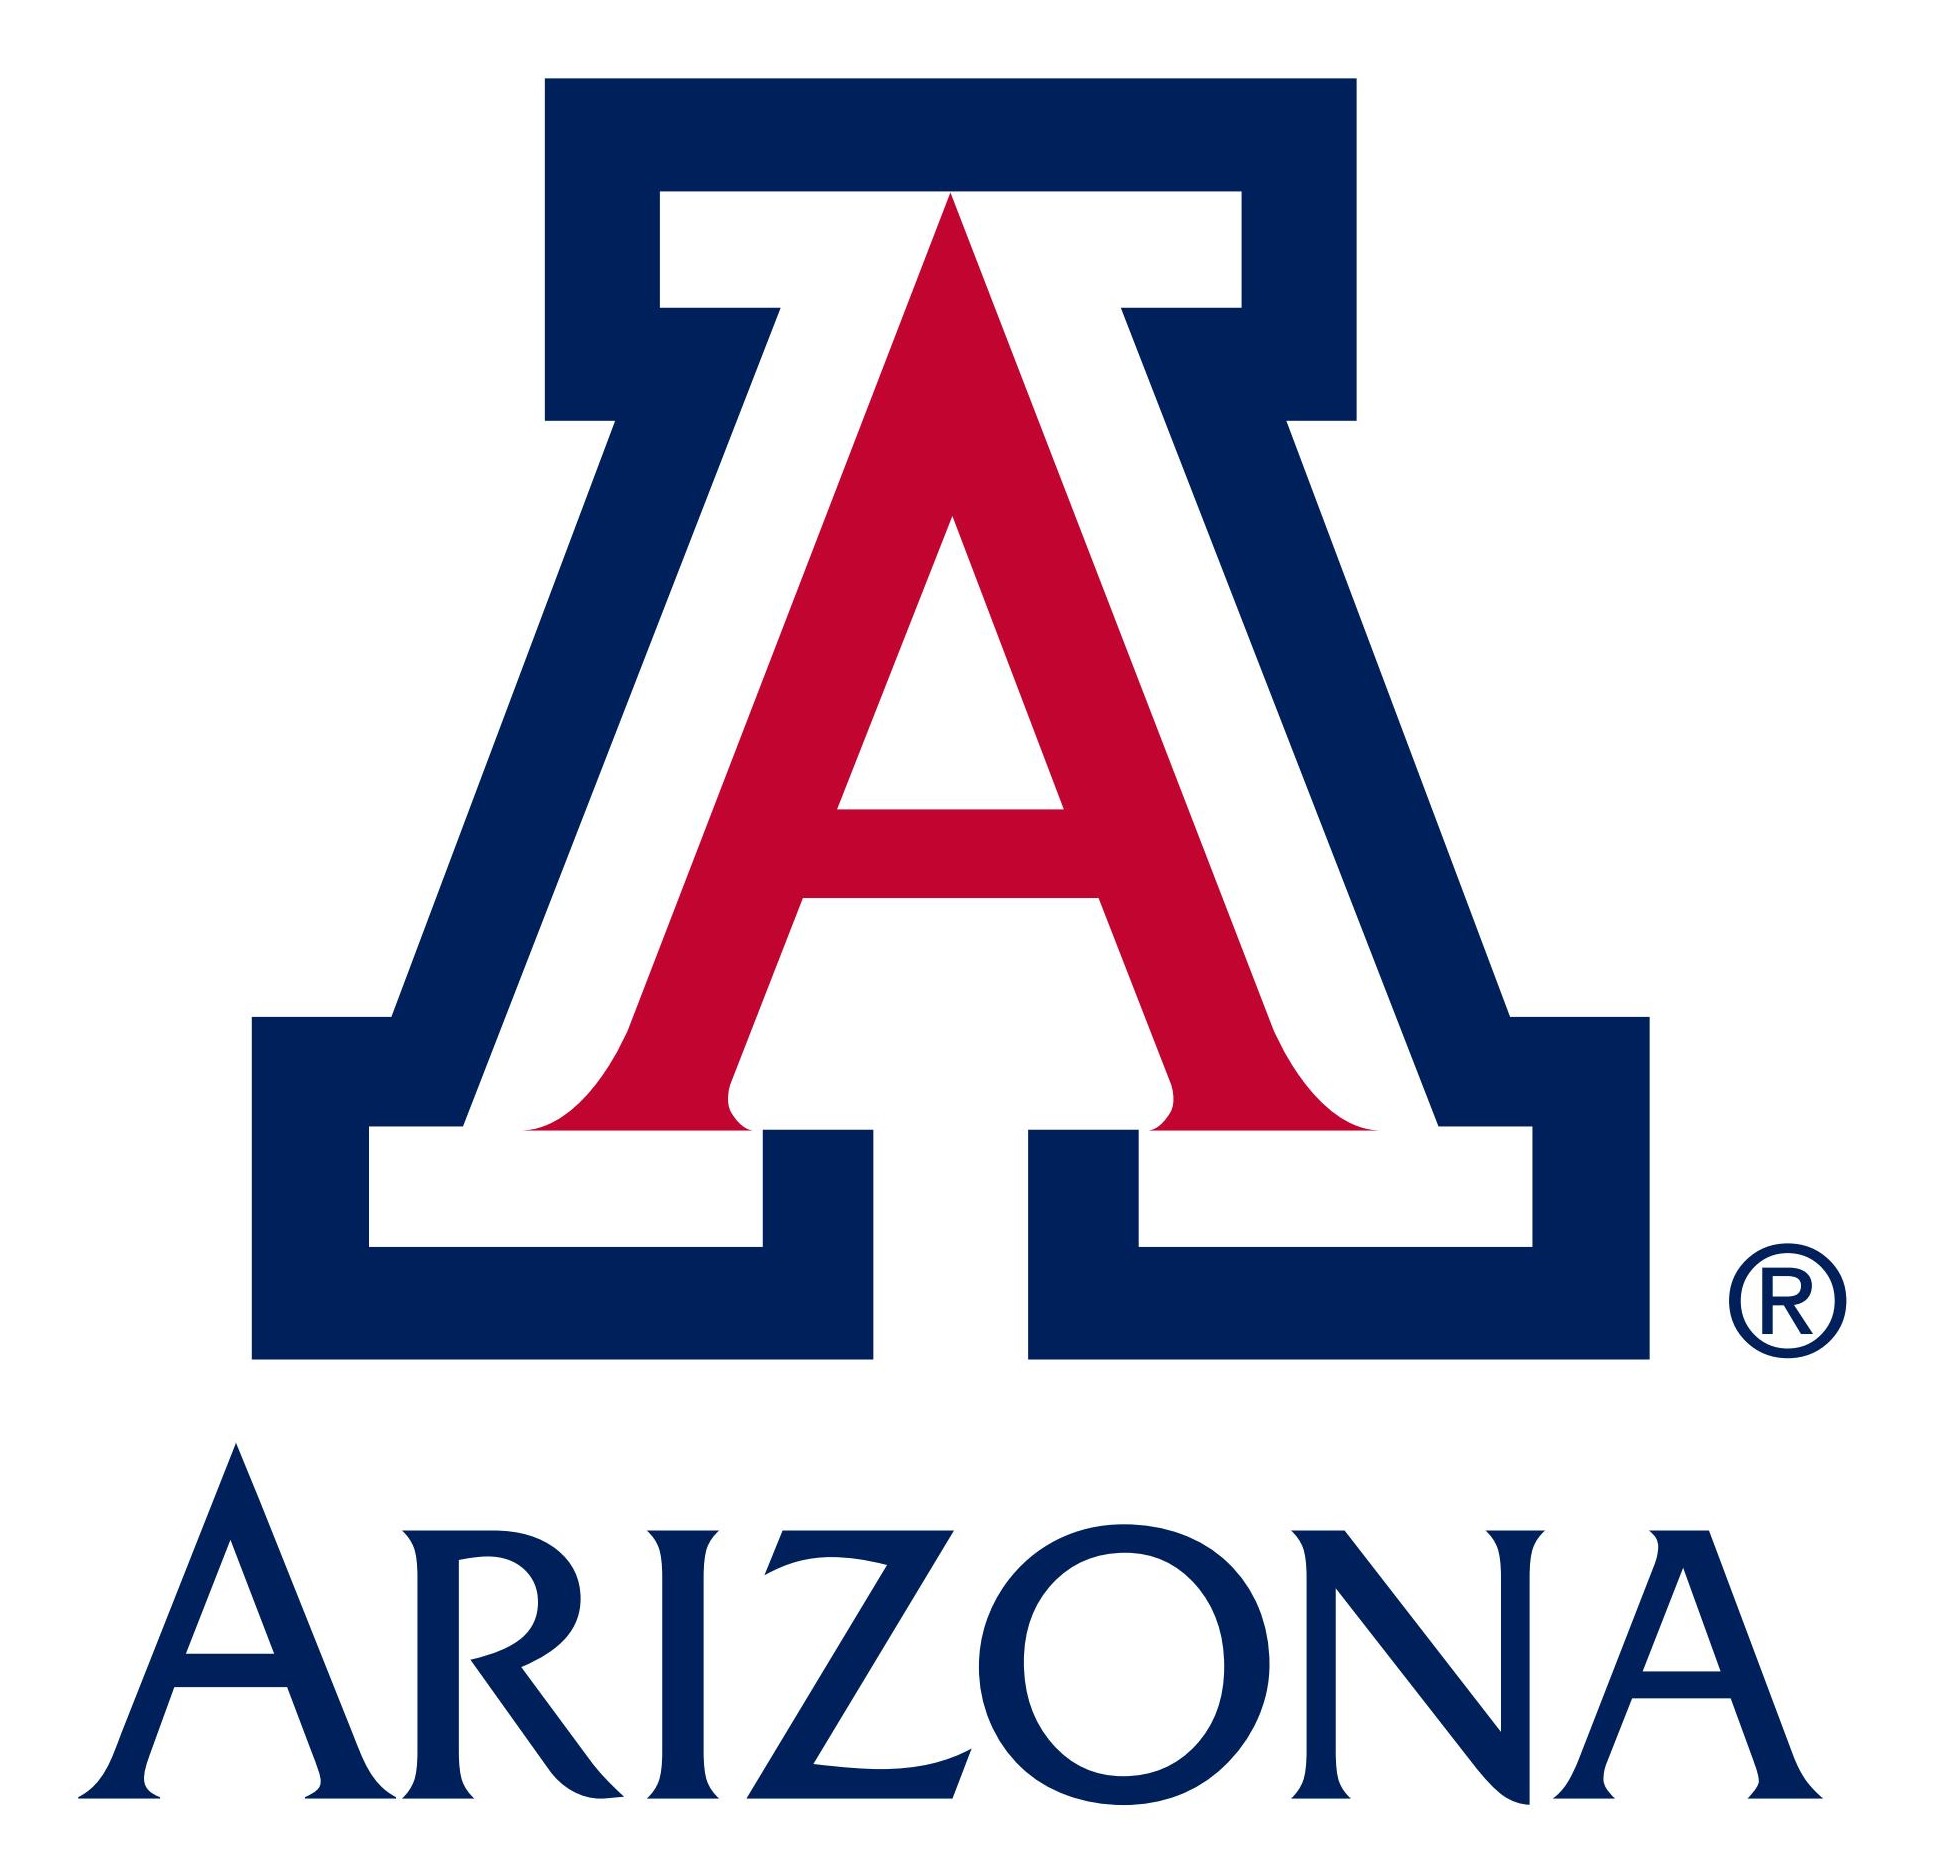 University of arizona logo